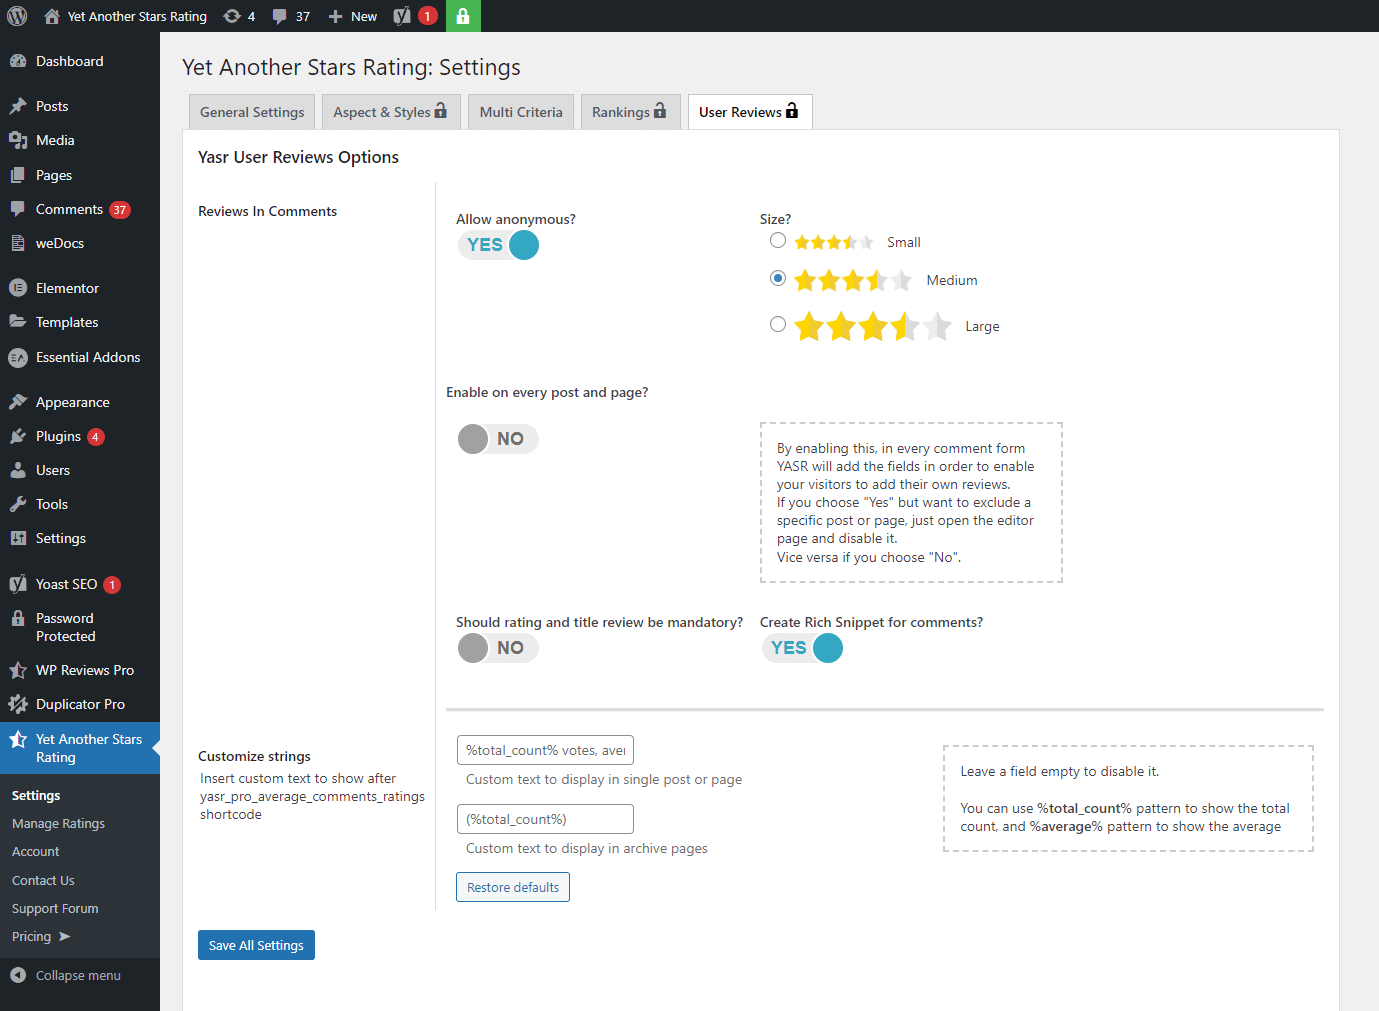 The YASR star ratings options panel